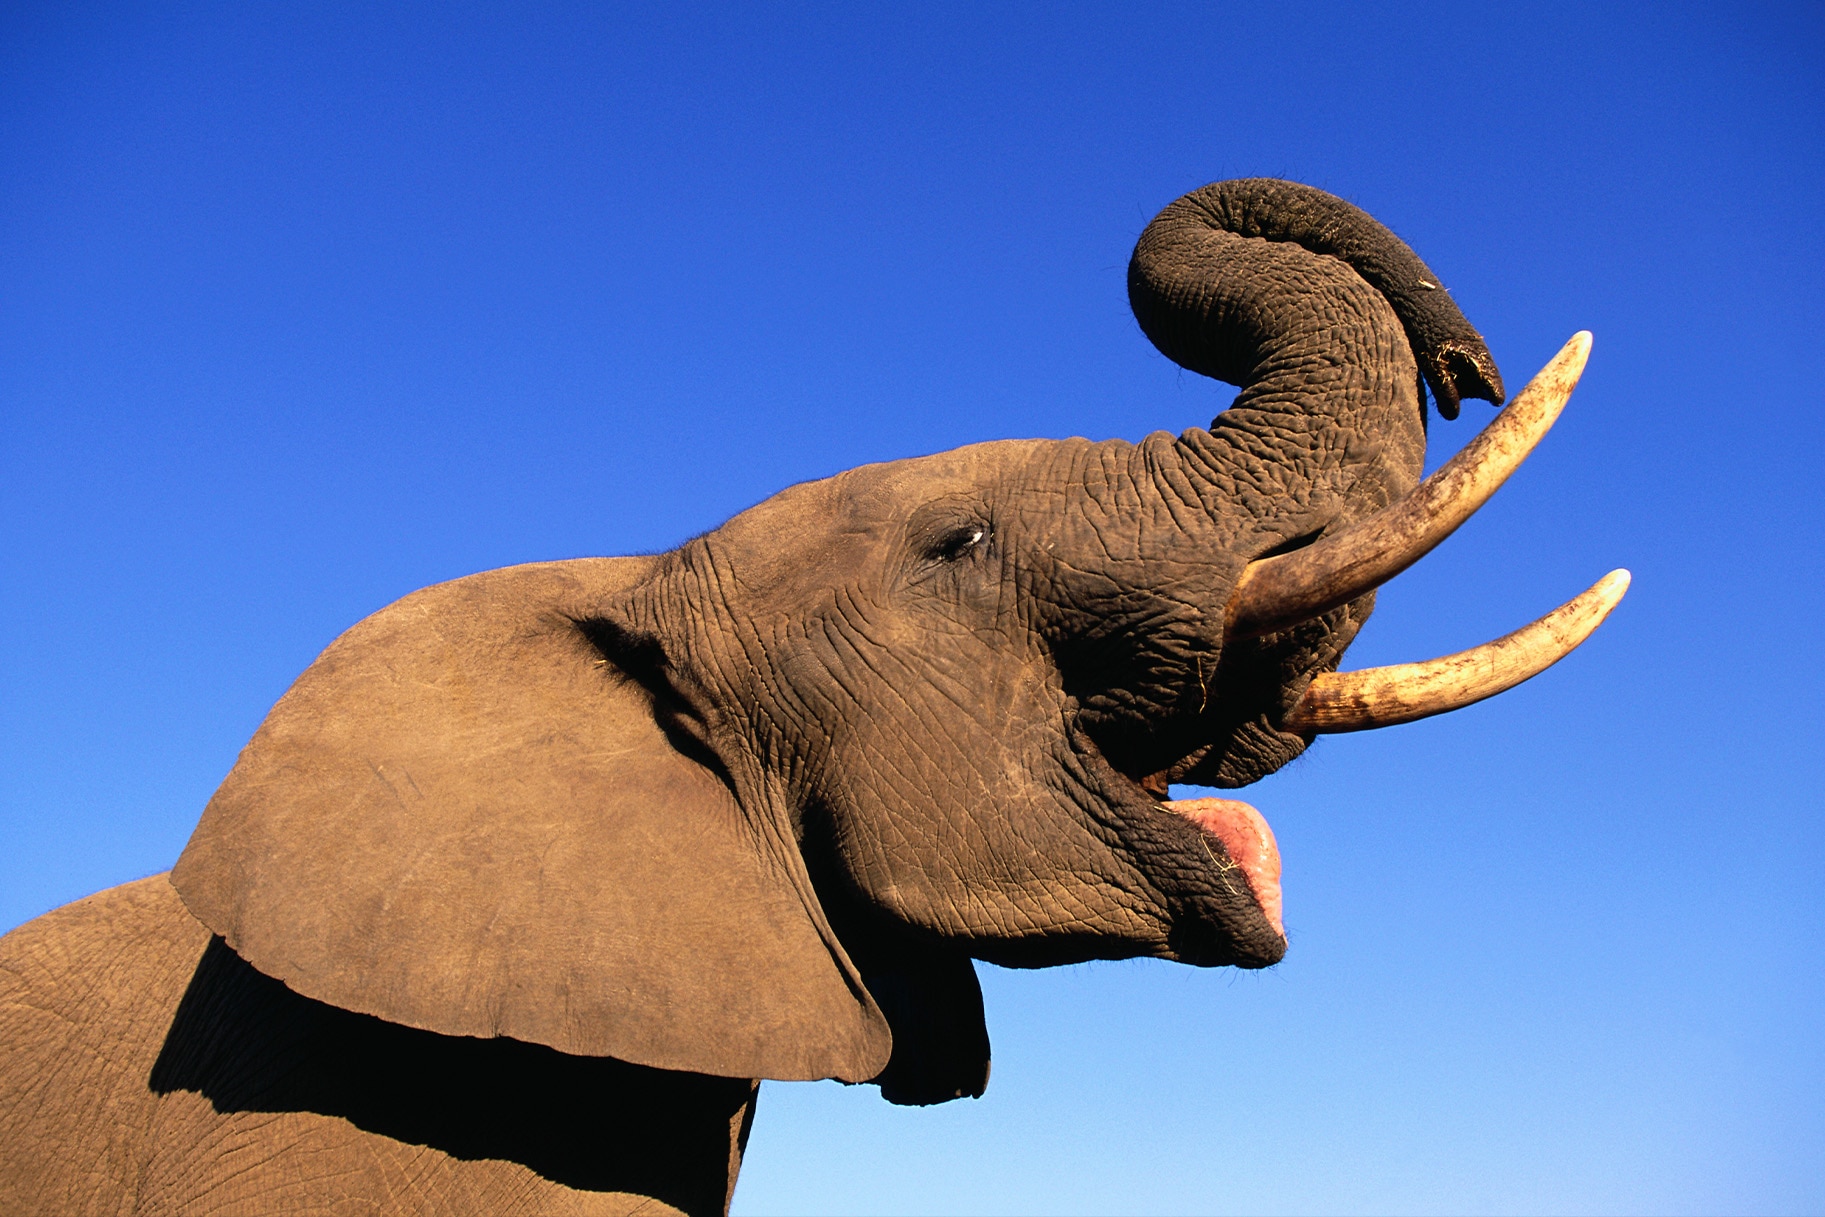 У слонов есть имена, и они реагируют на прямое общение, показали исследования